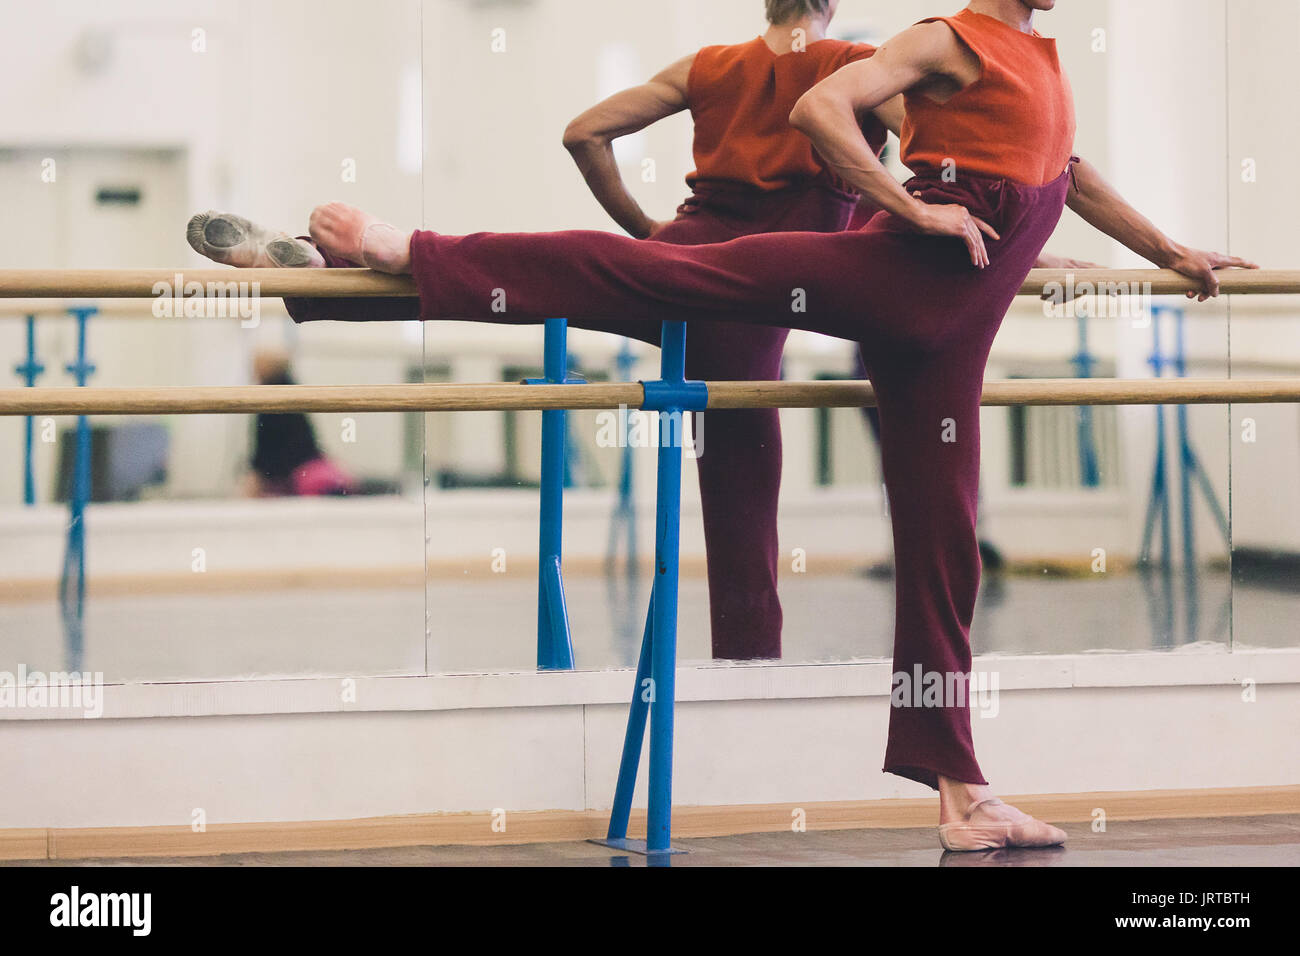 La danza, el de belleza. Dura bailarina de ballet vistiendo pantalones de chándal acogedor en granate y zanahoria-rojo sin mangas haciendo ejercicios en la sala de baile coreográfico